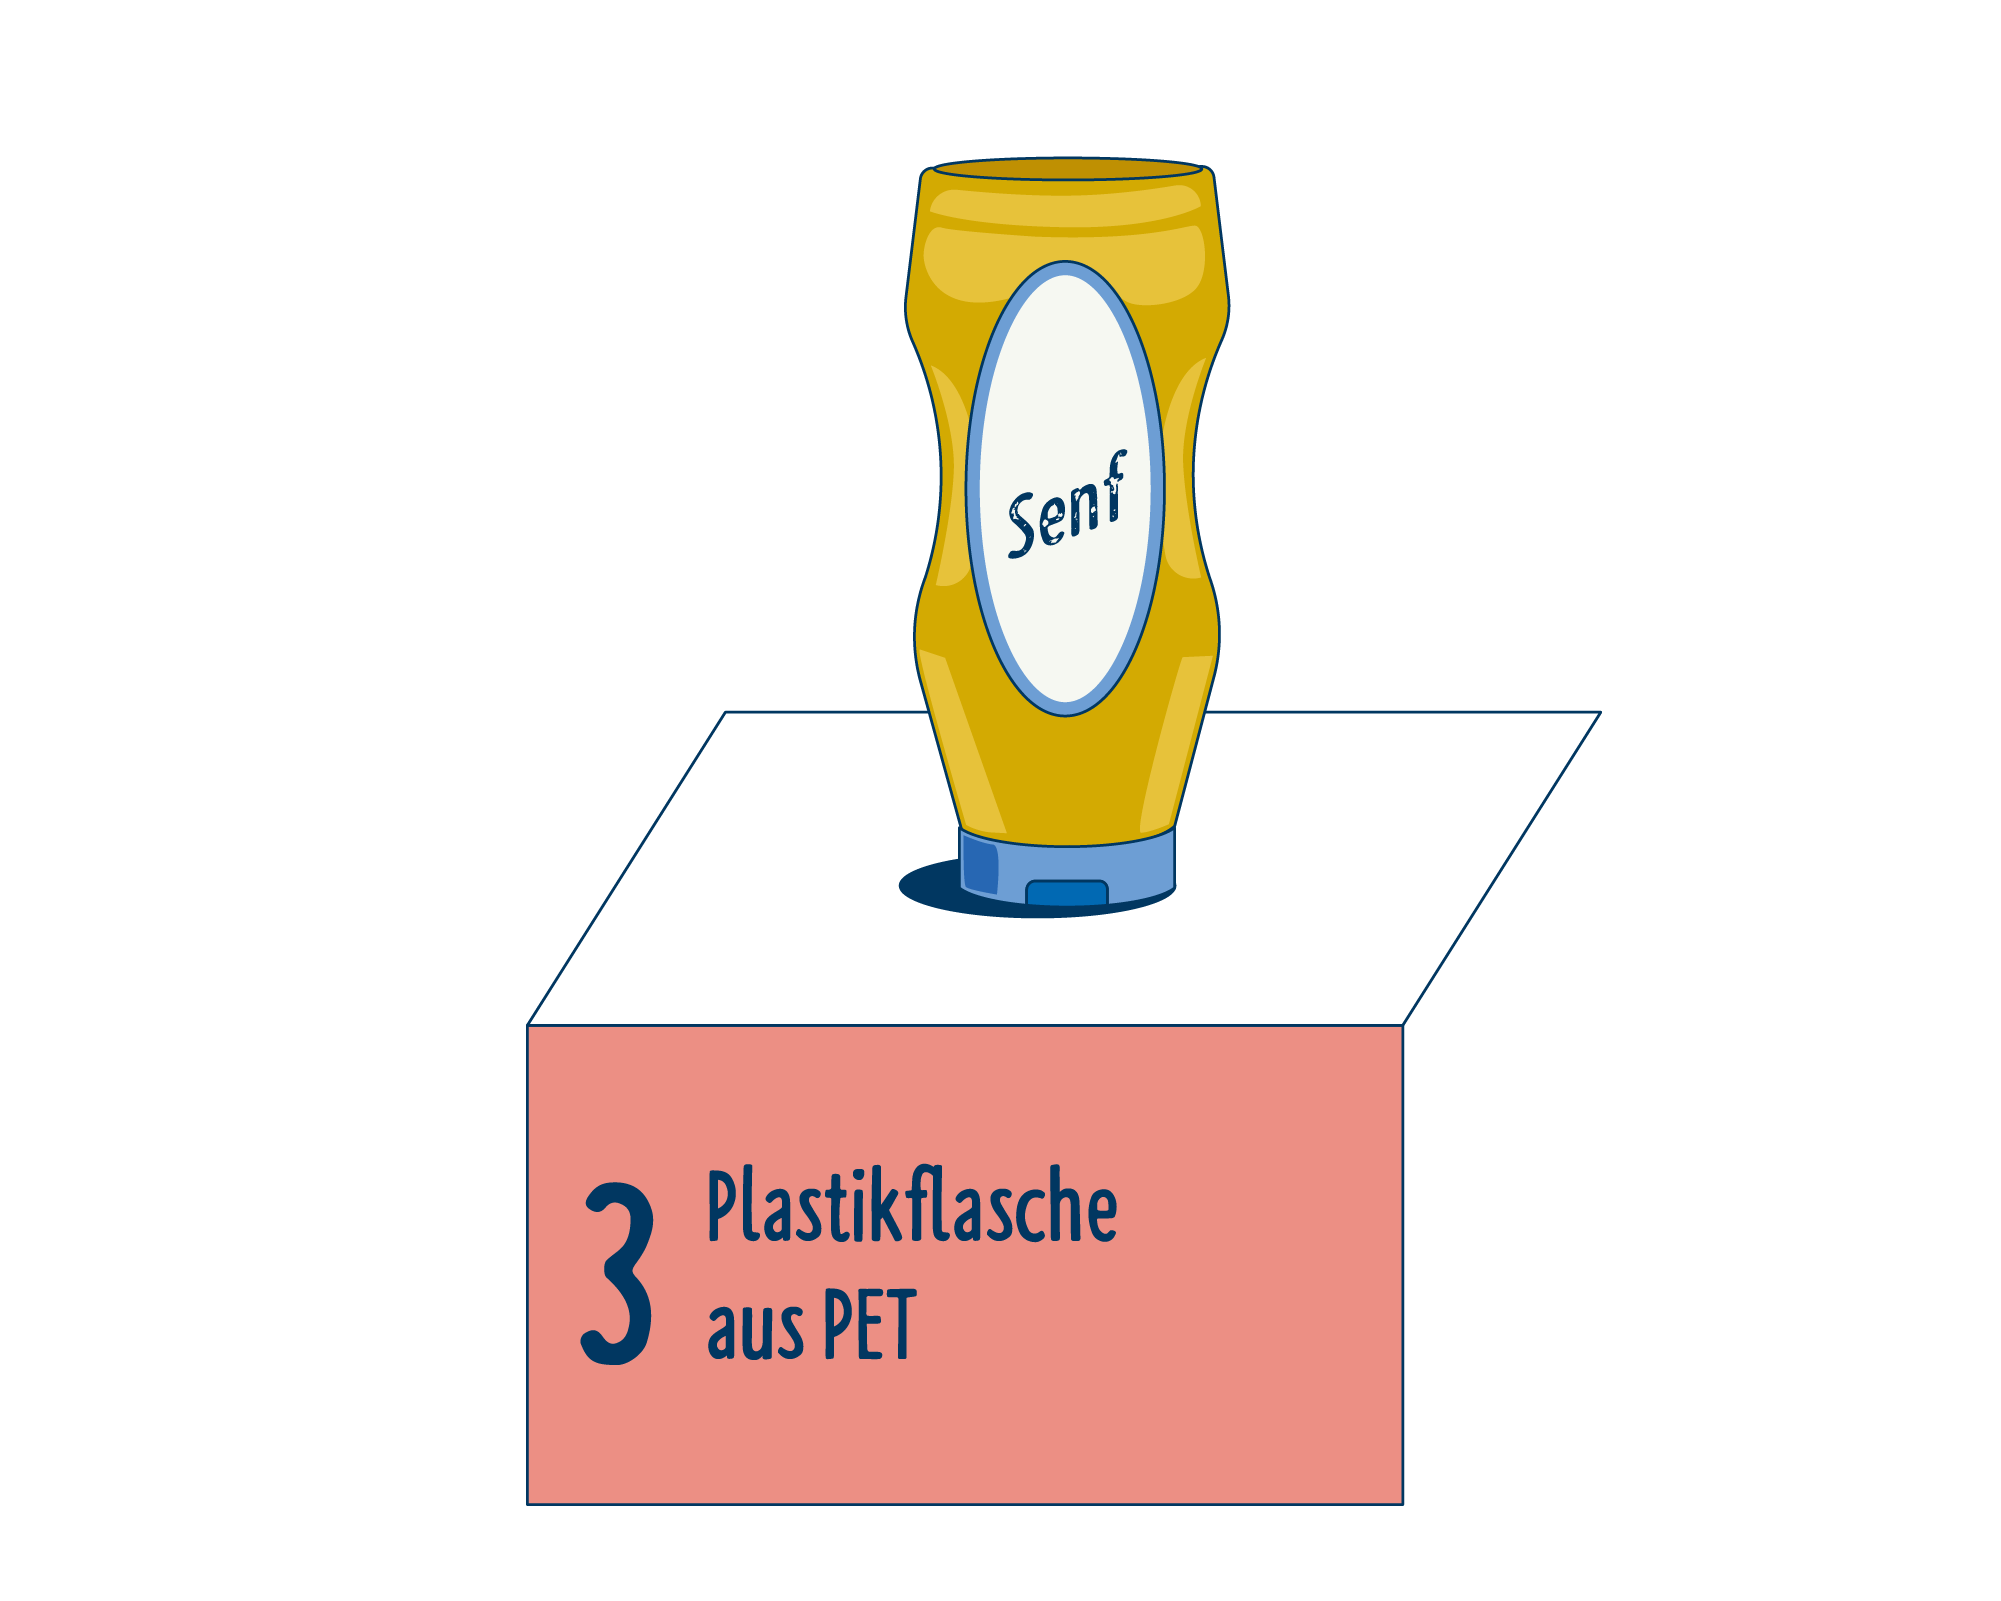 Bild Produktverpackung von Senf & Saucen eingeordnet auf Platz 3, bestehend aus Plastikflasche aus PET.